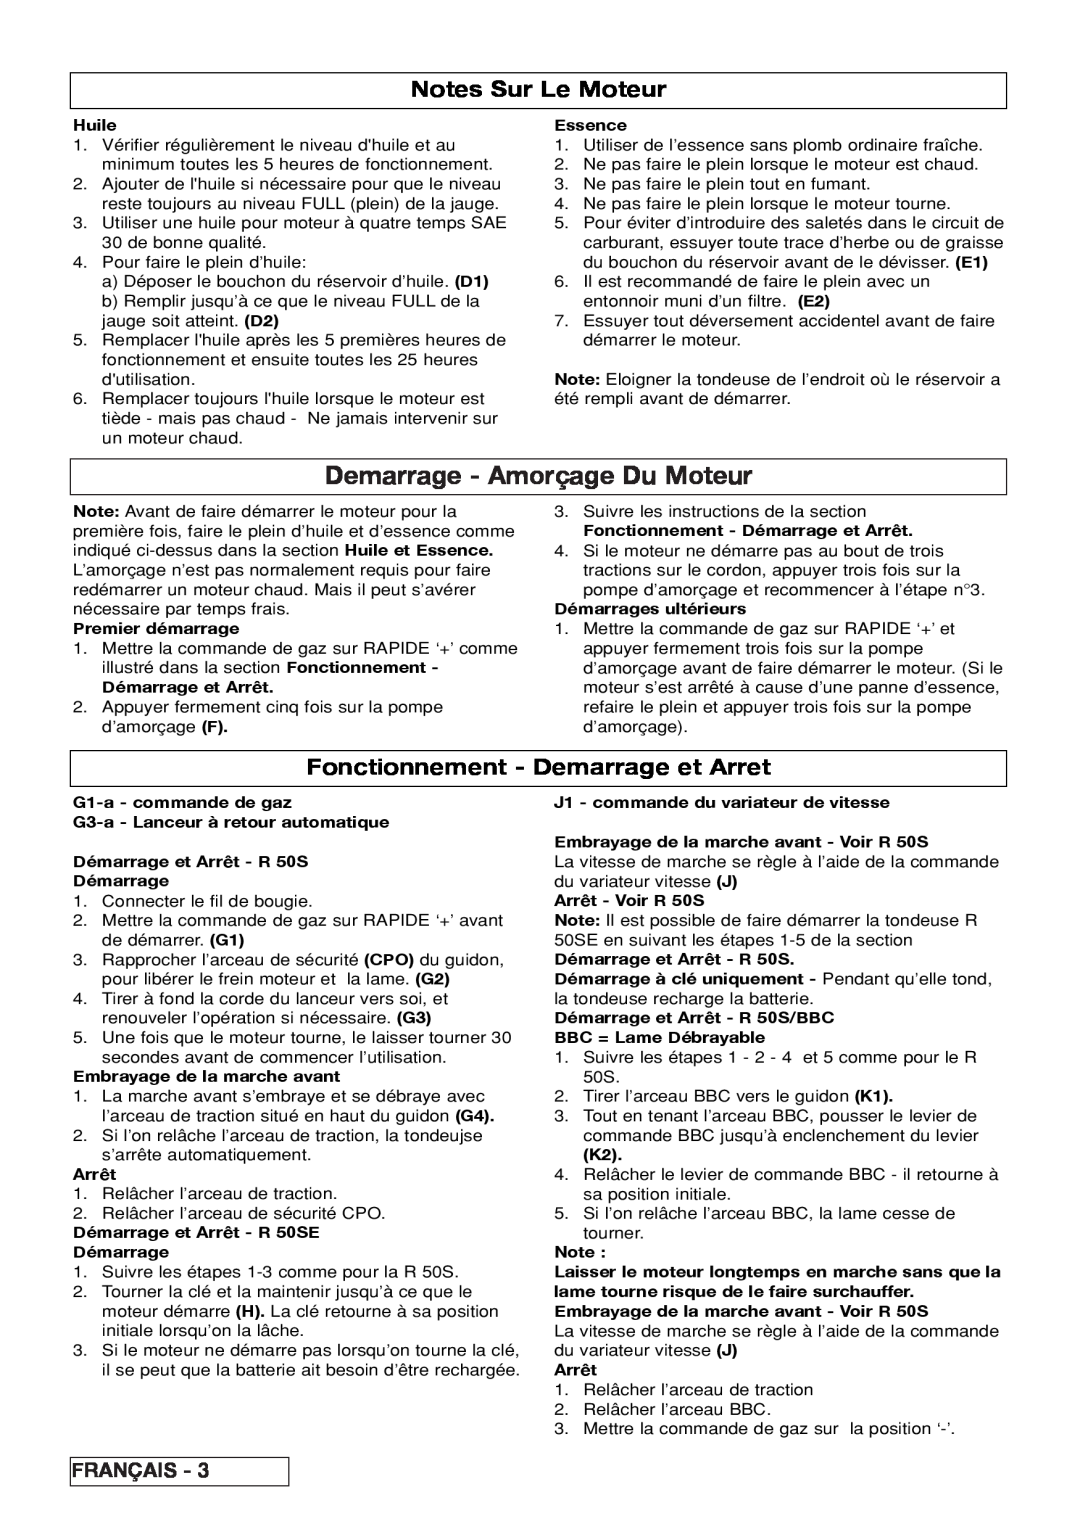 Husqvarna R 50S / BBC, R 50SE Demarrage - Amorçage Du Moteur, Notes Sur Le Moteur, Fonctionnement - Demarrage et Arret 